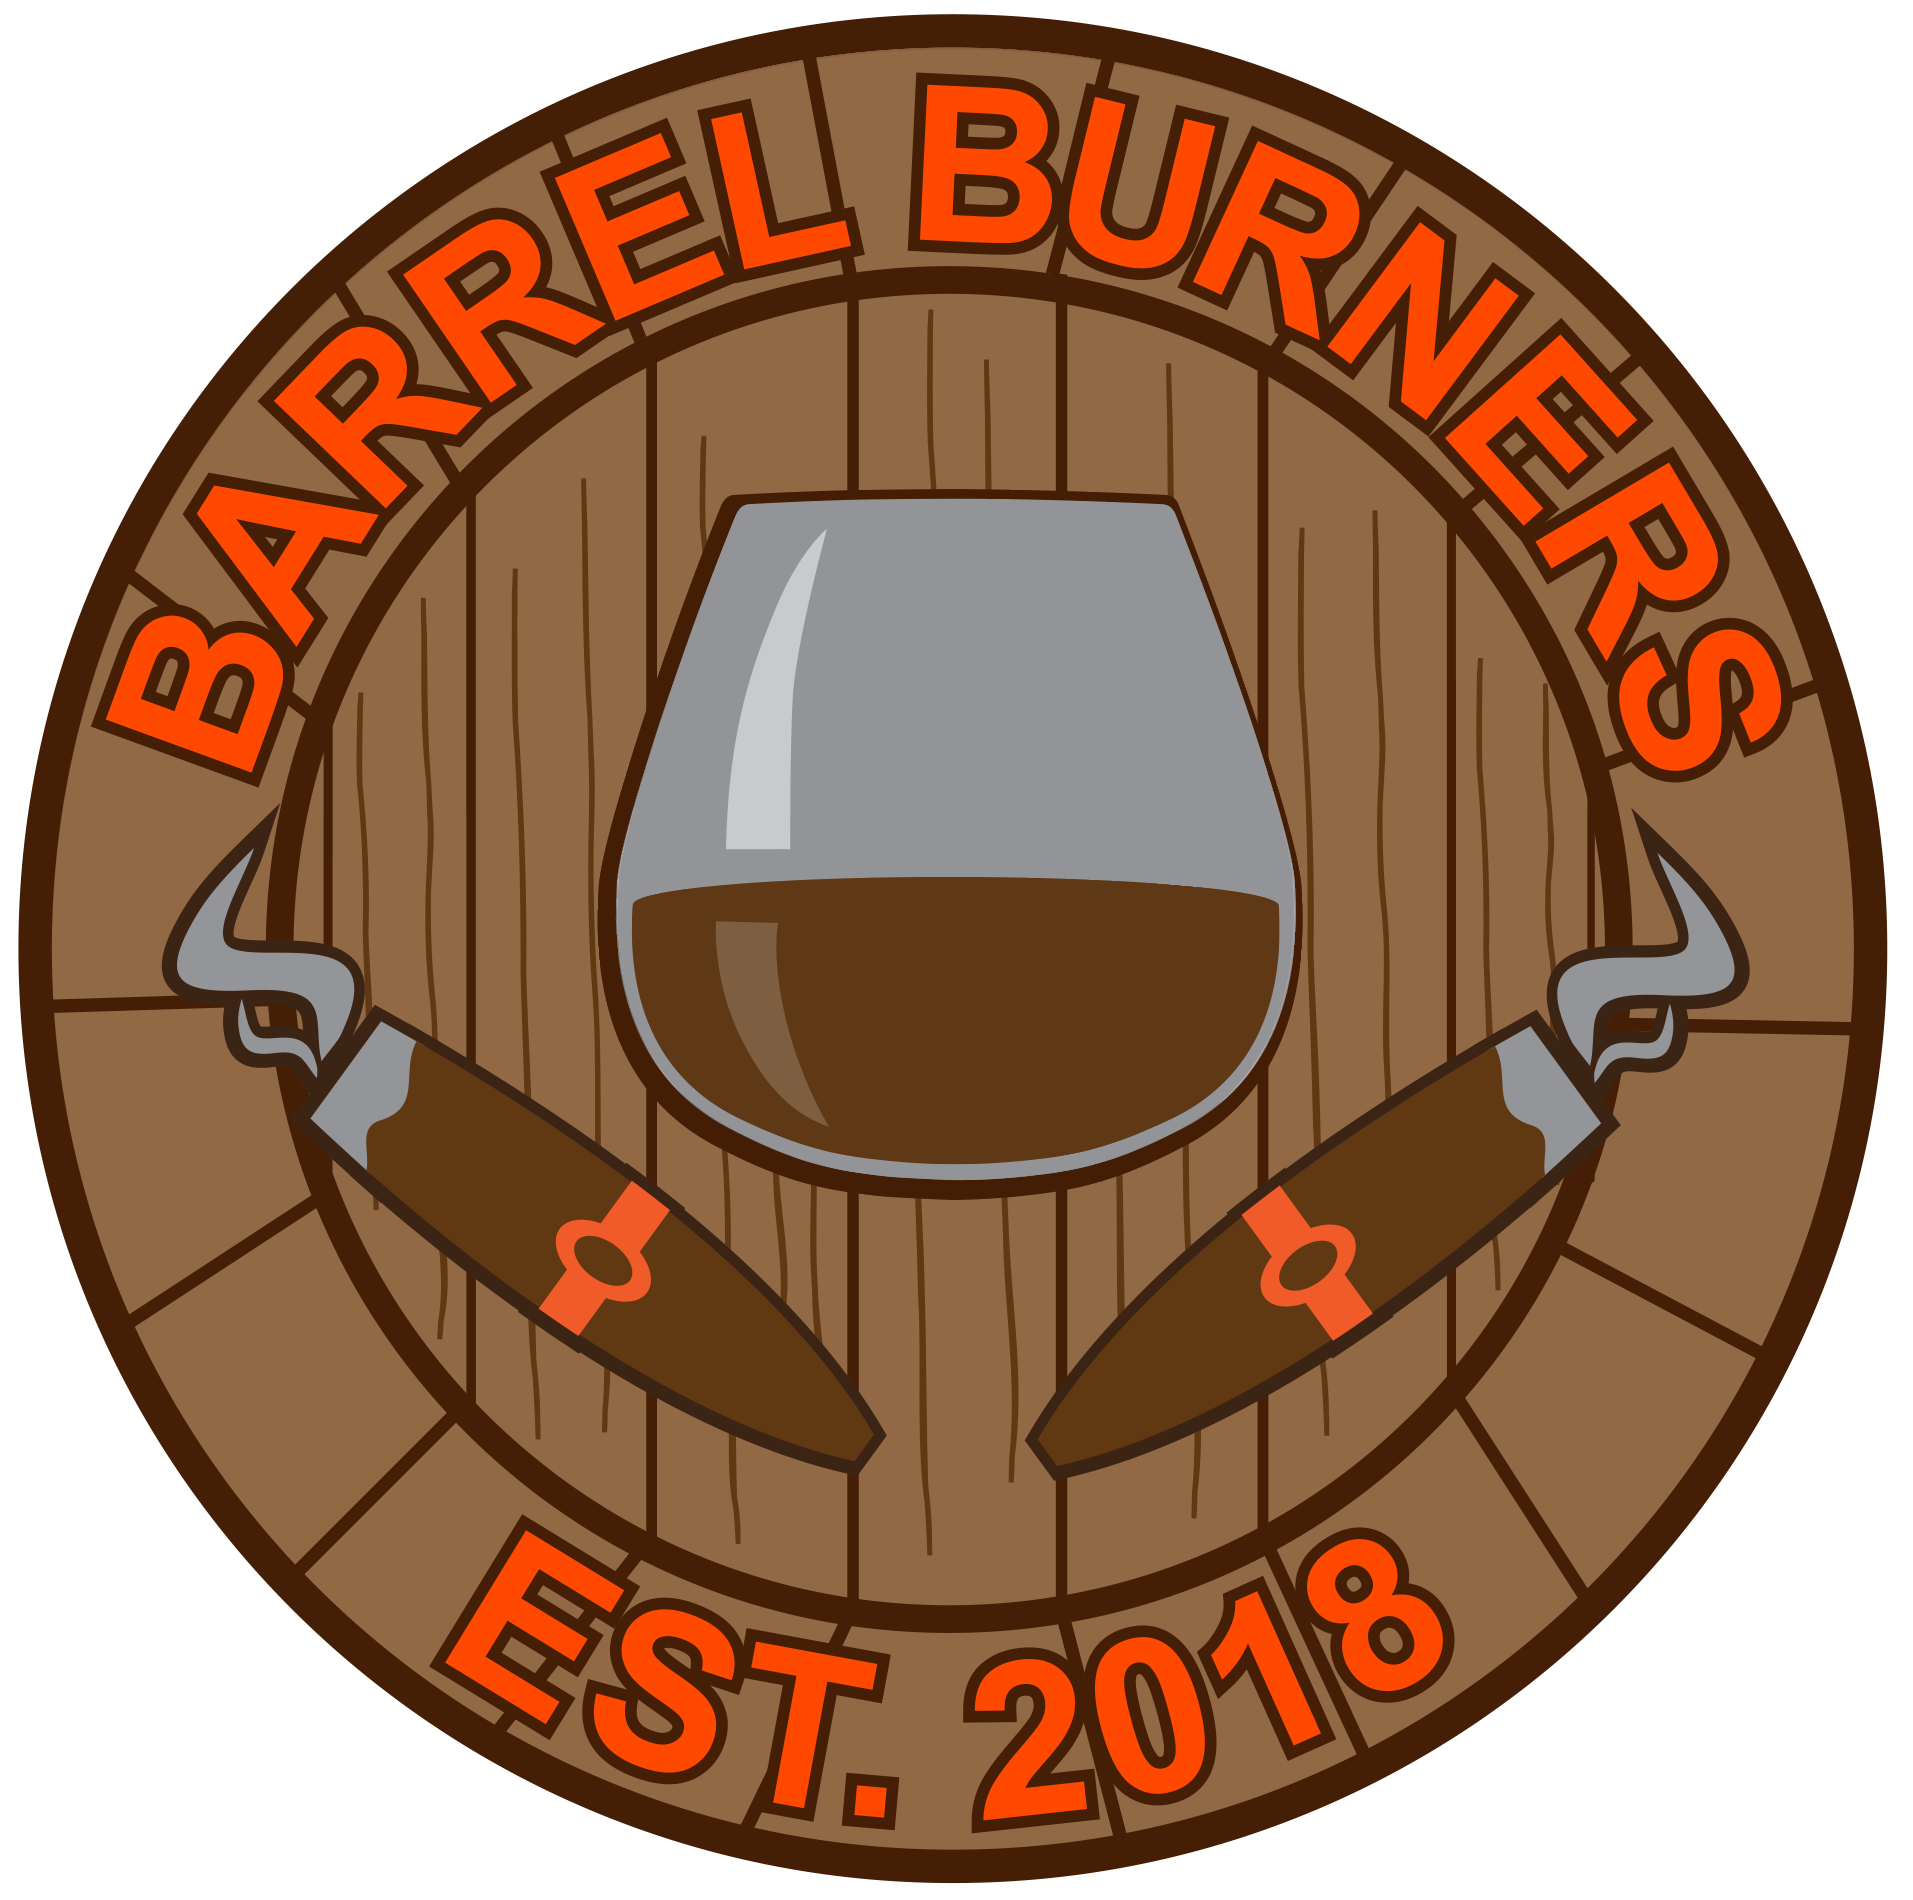 Barrel Burners